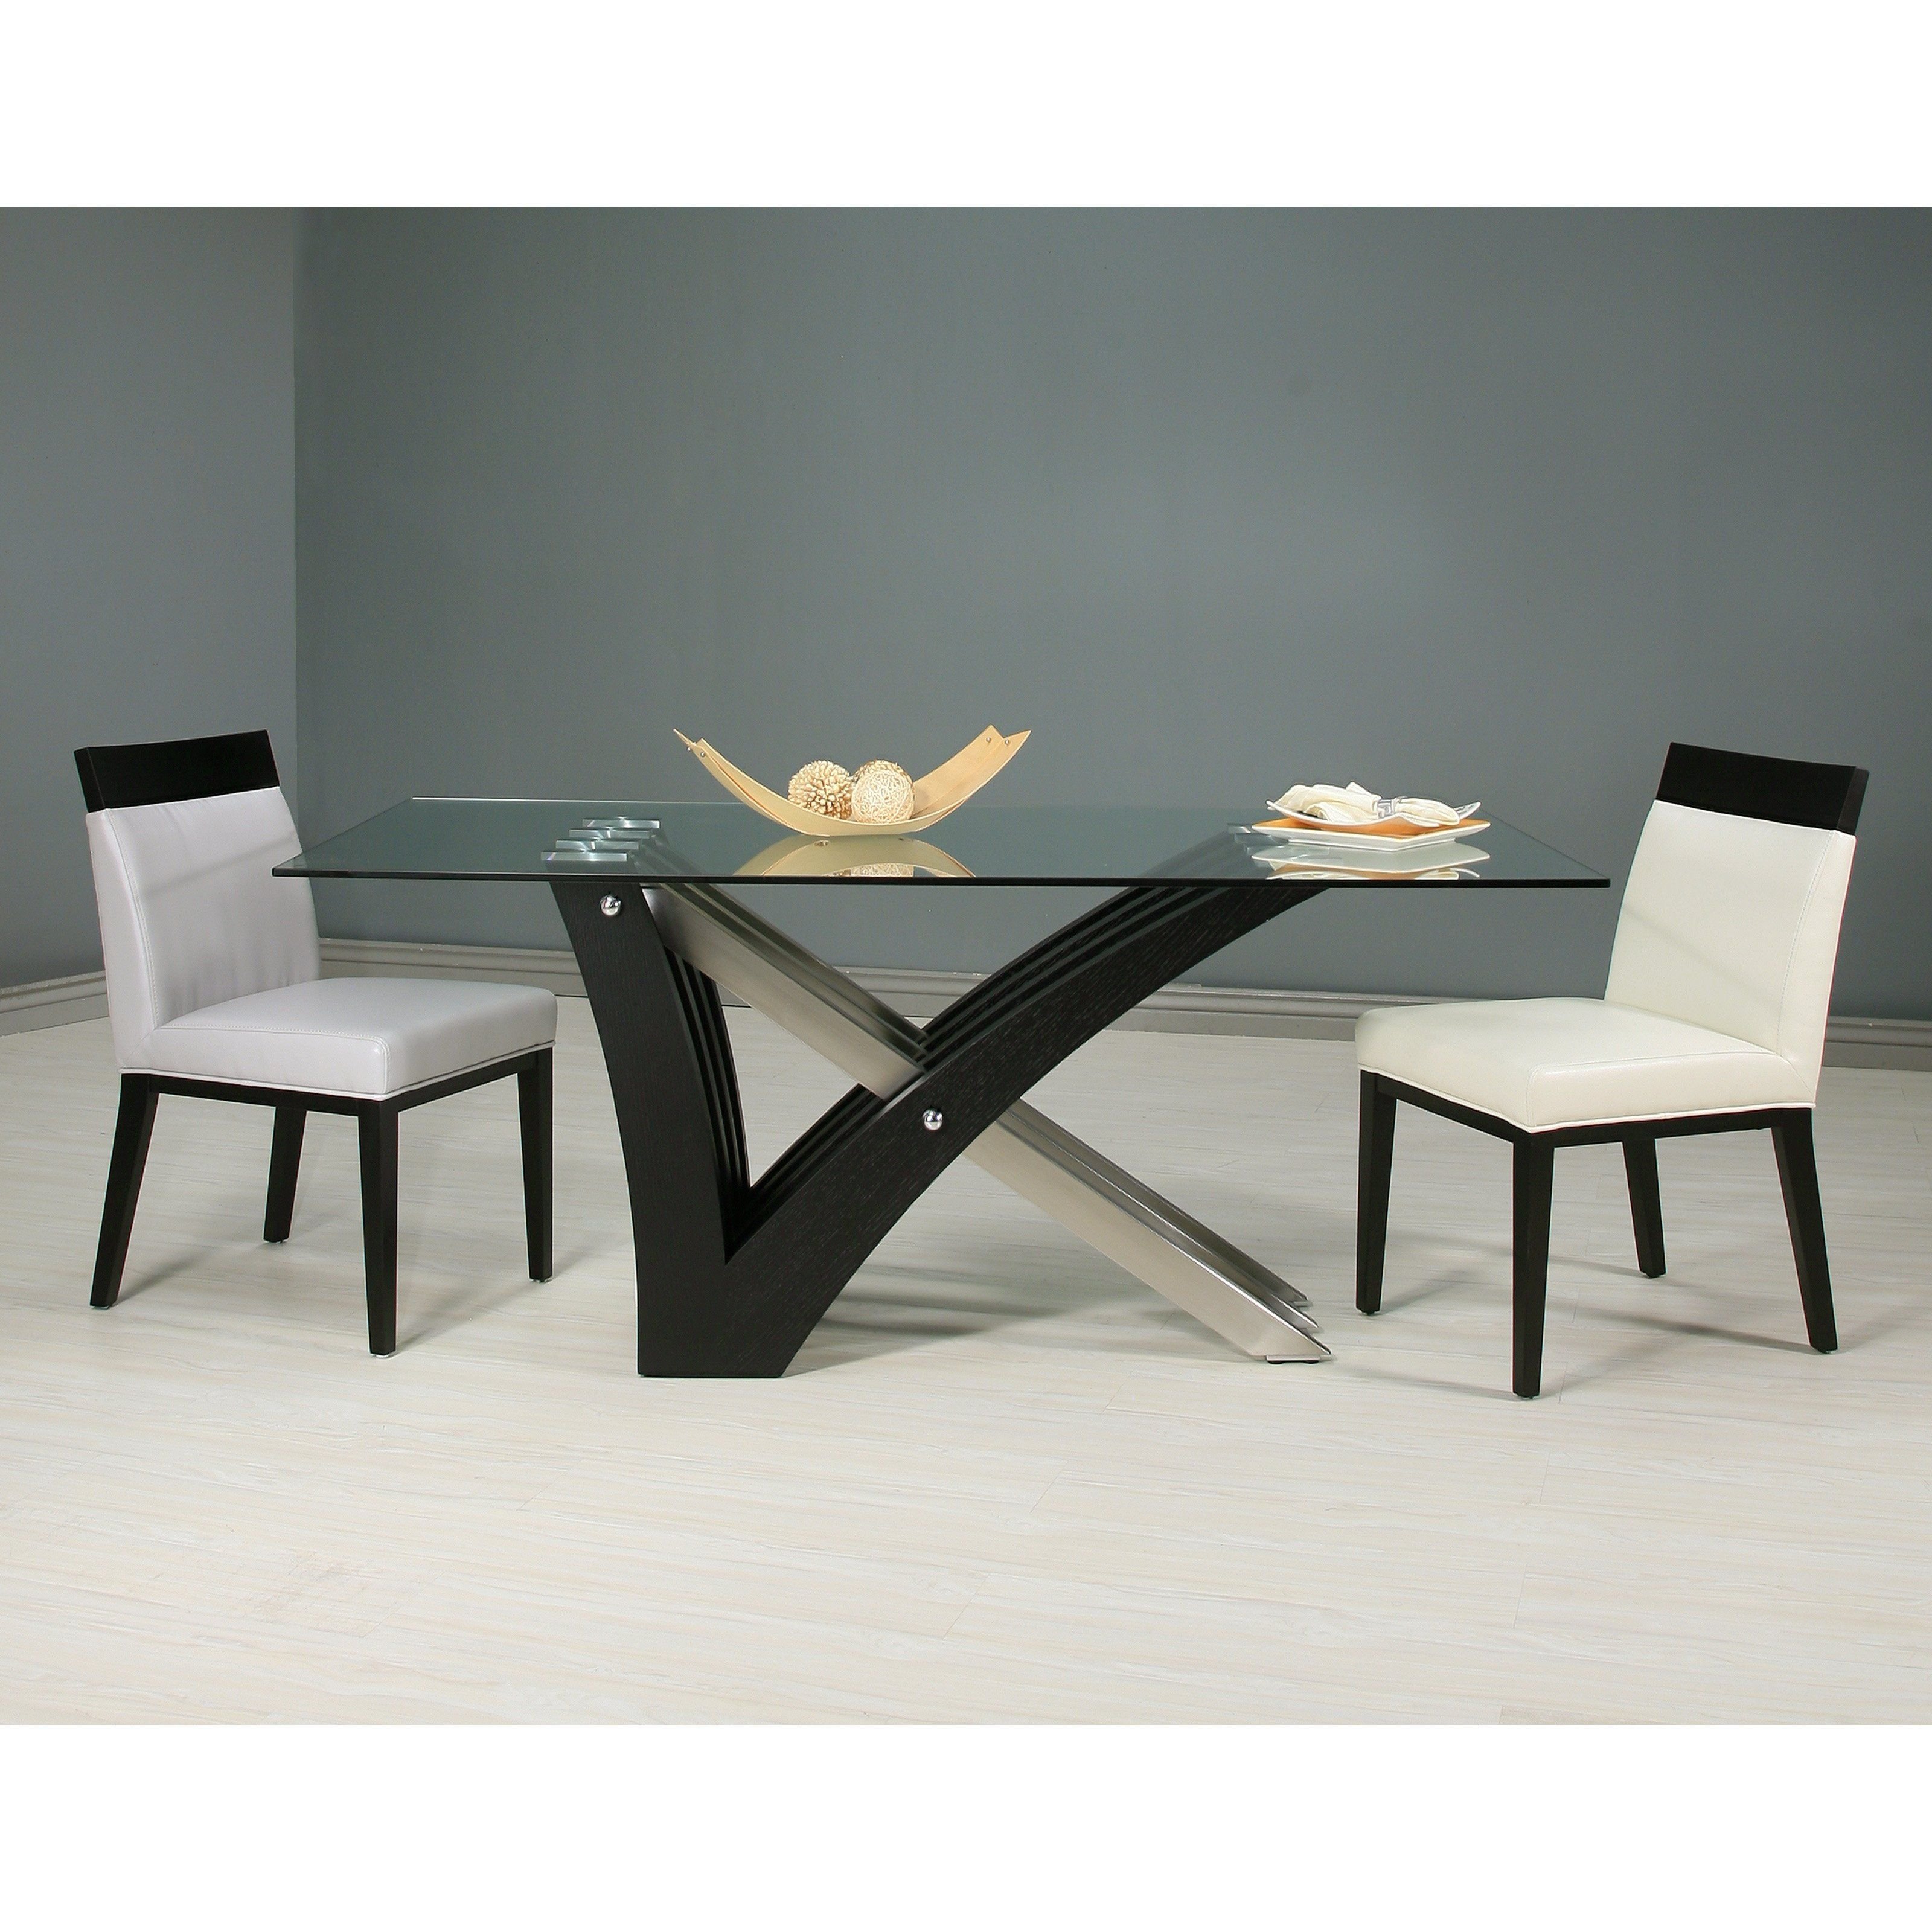 Обеденные столы 60 60. Стул Mebwill Модерн. Дизайнерский обеденный стол. Обеденный стол необычной формы. Дизайнерские столы для кухни.